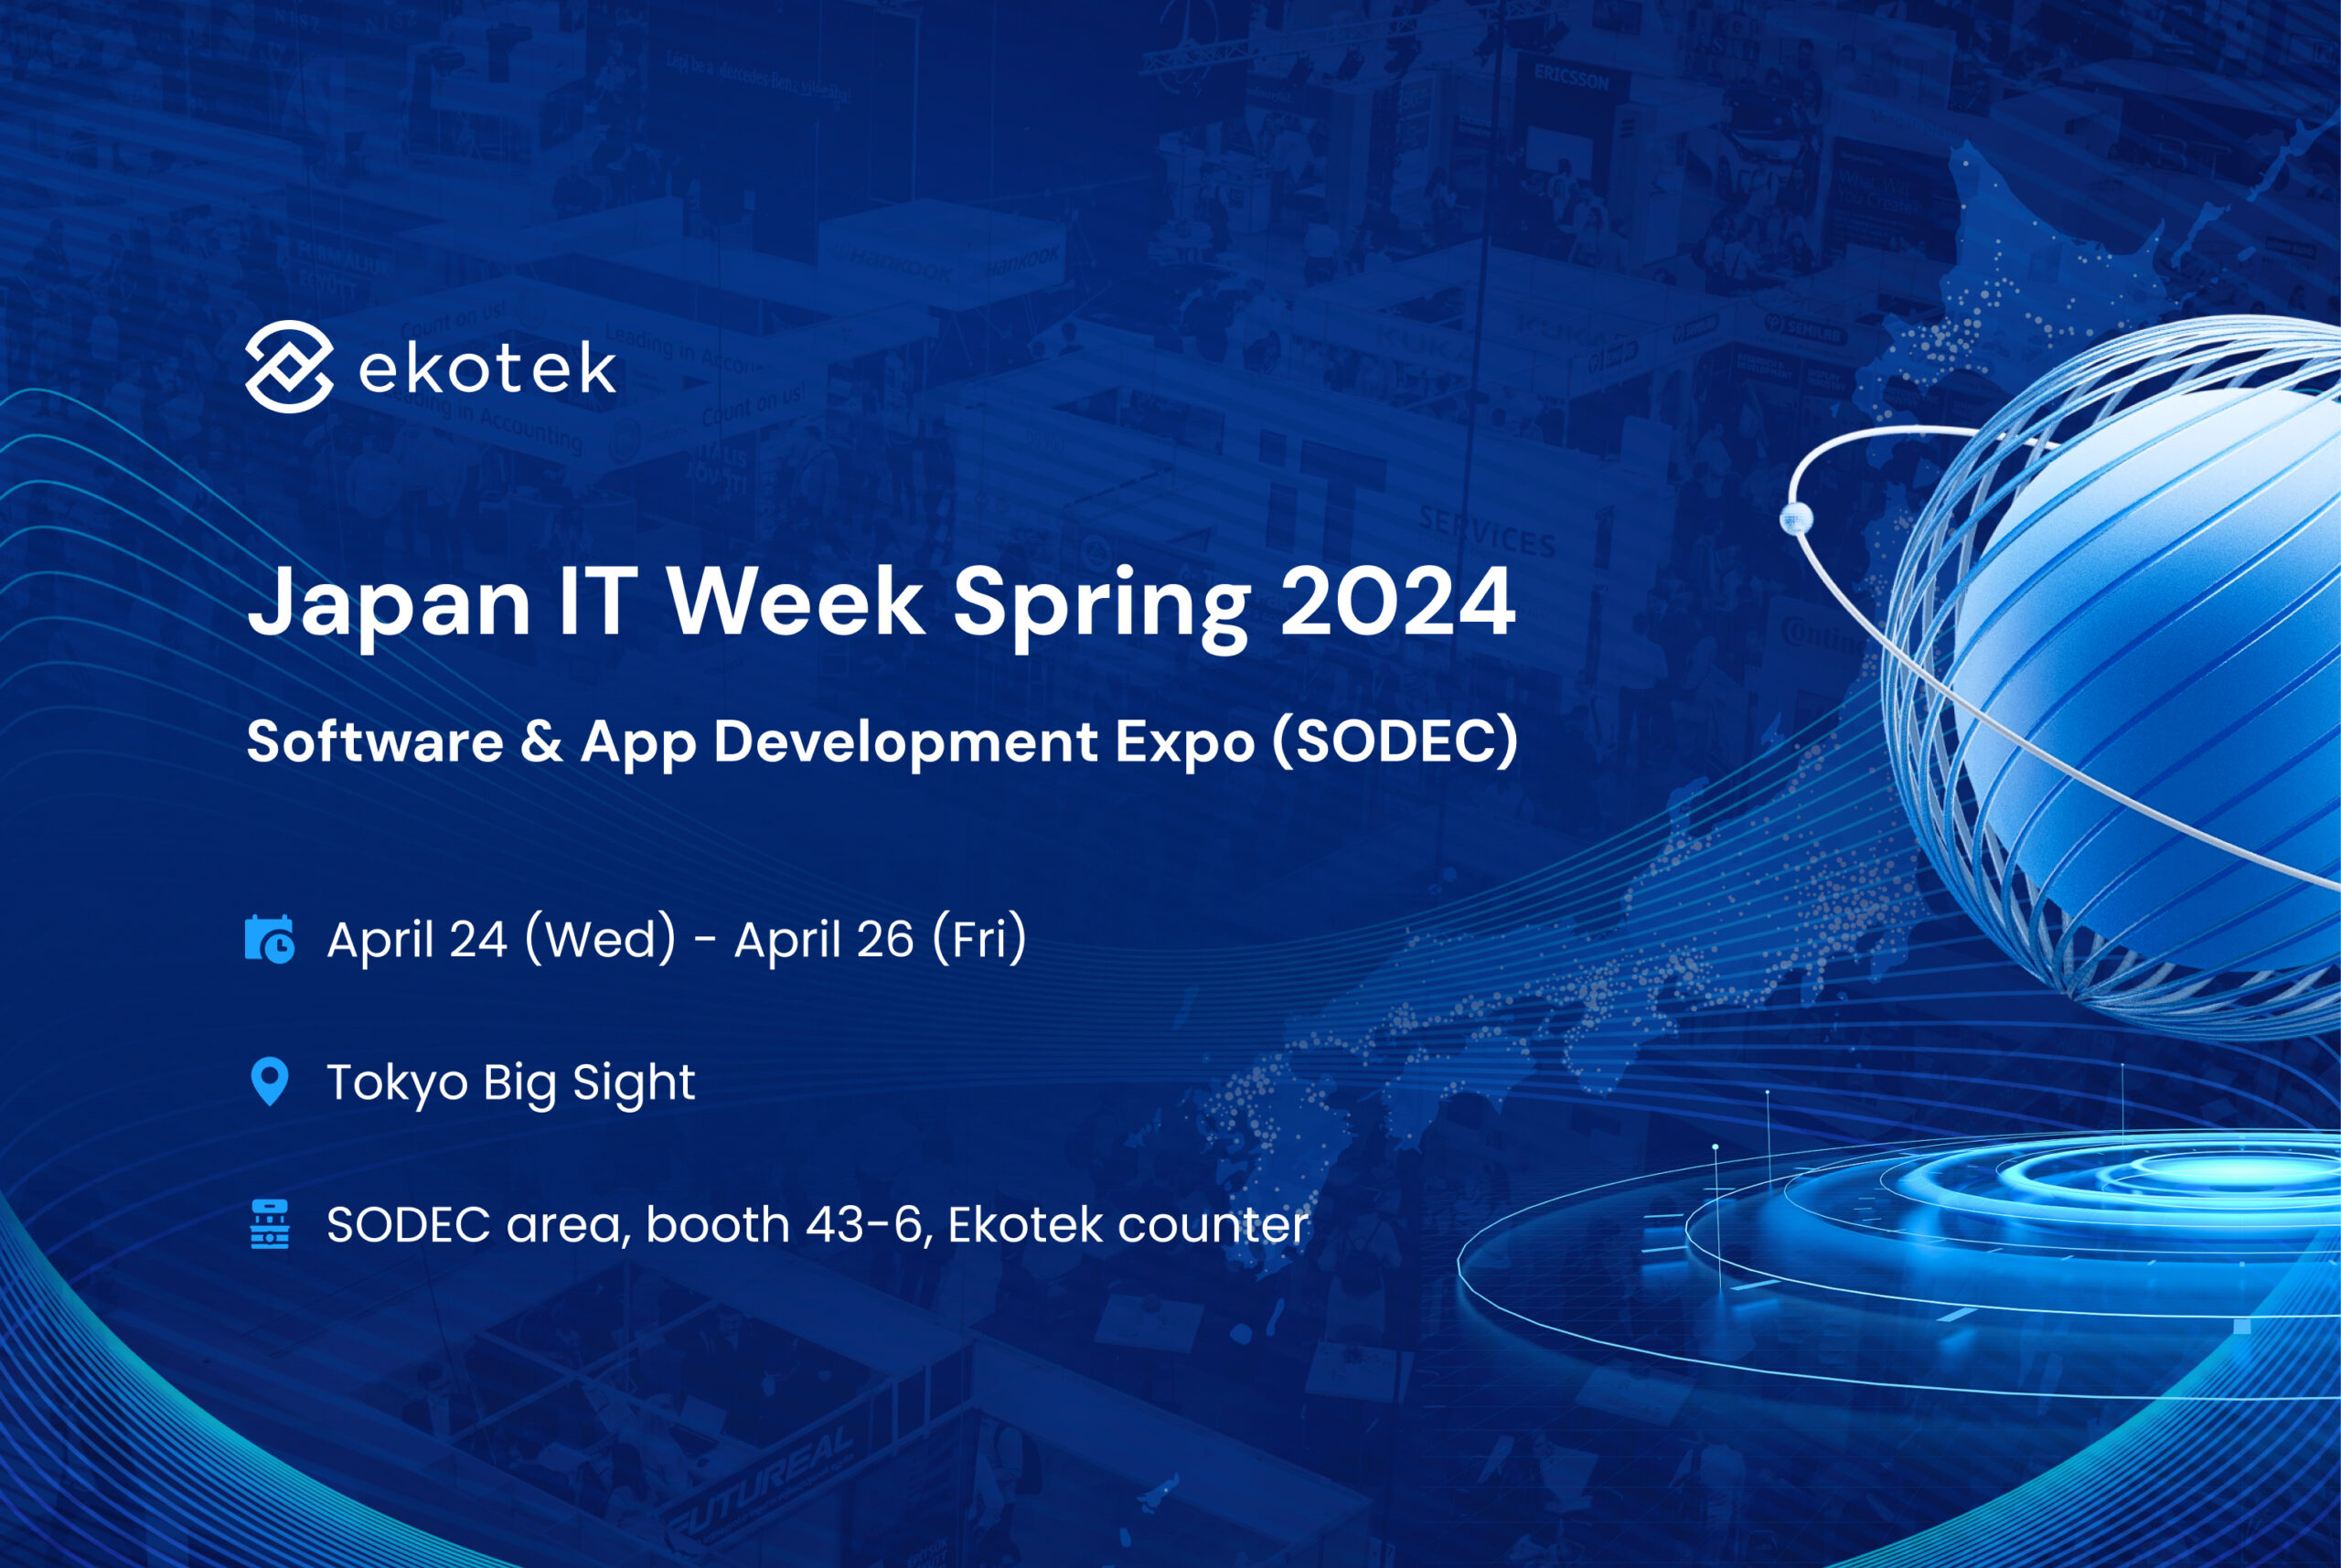 Ekotek is attending the 33rd Japan IT Week